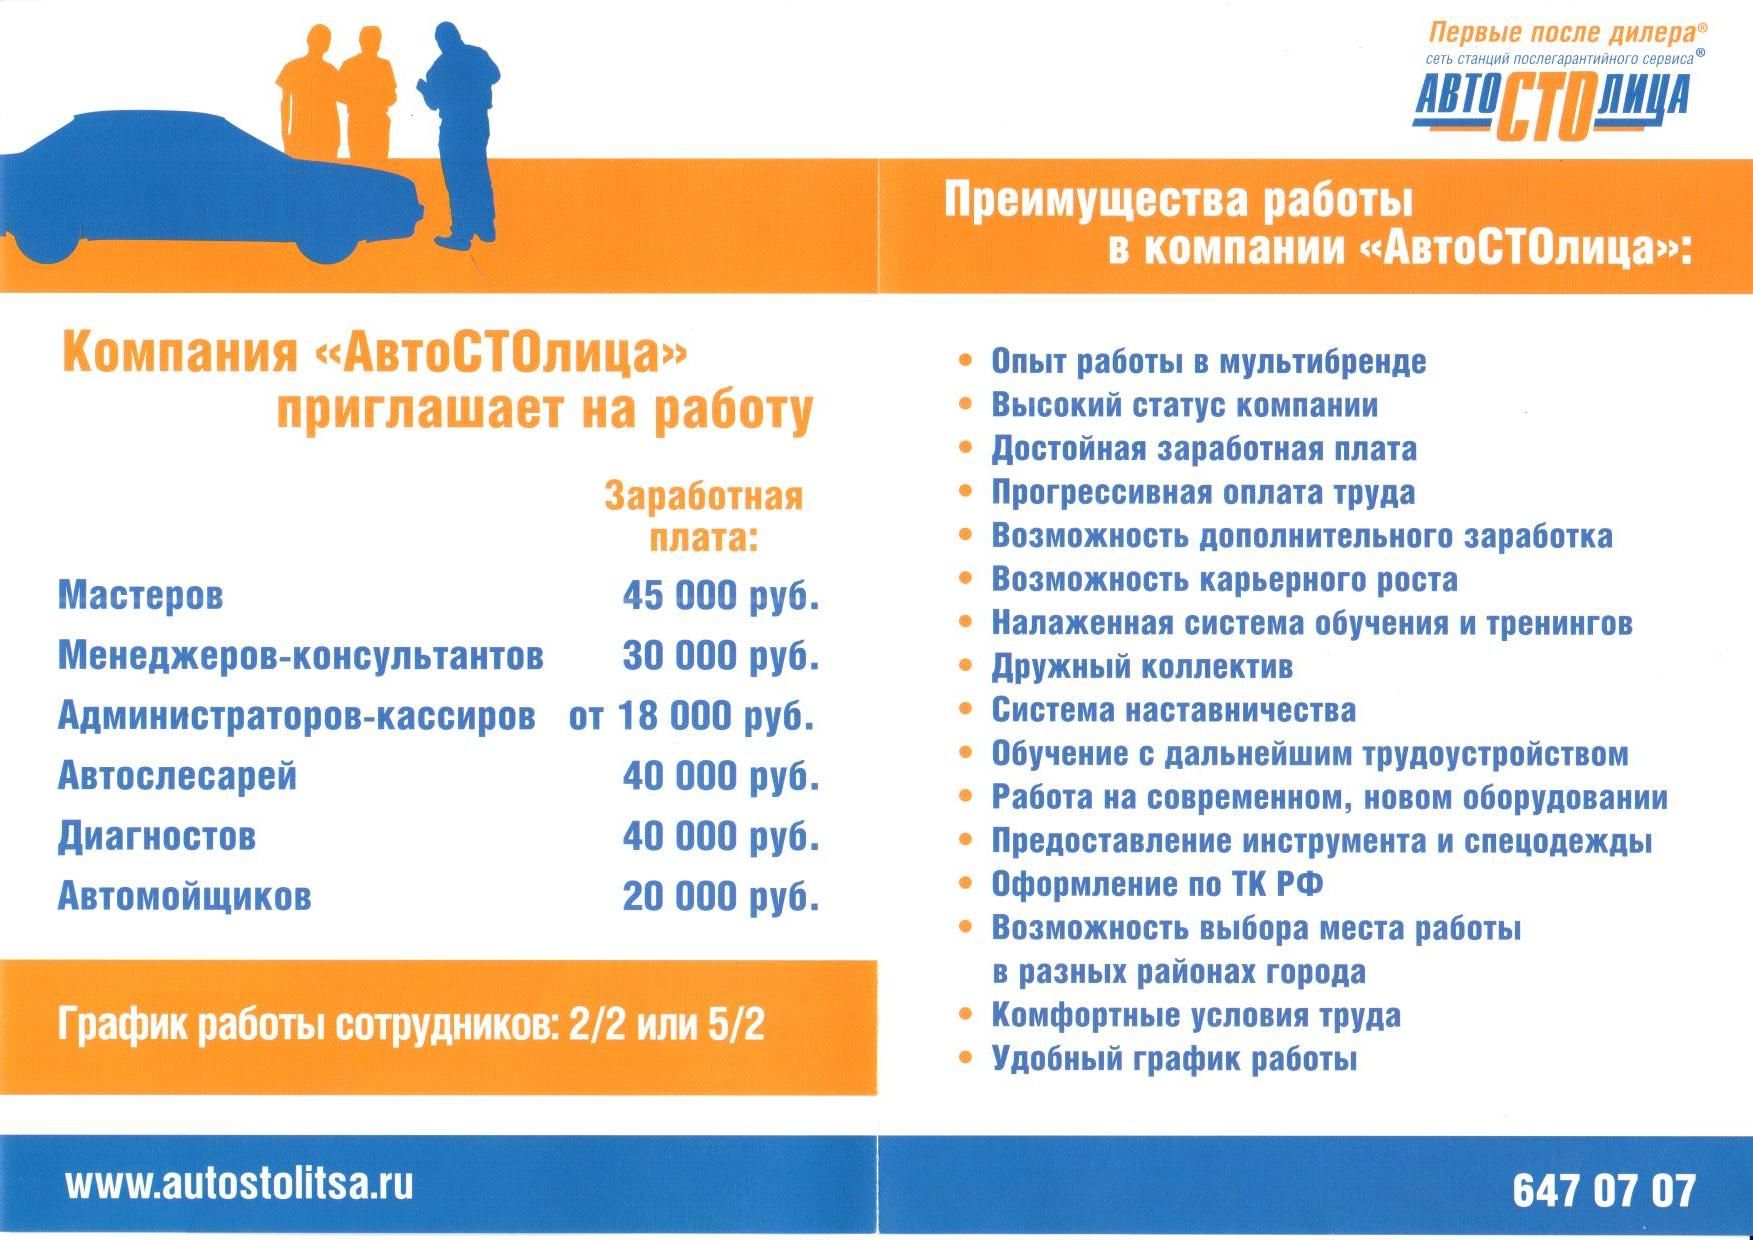 Работа в испании для русских, украинцев, белорусов: вакансии 2021 - prian.ru